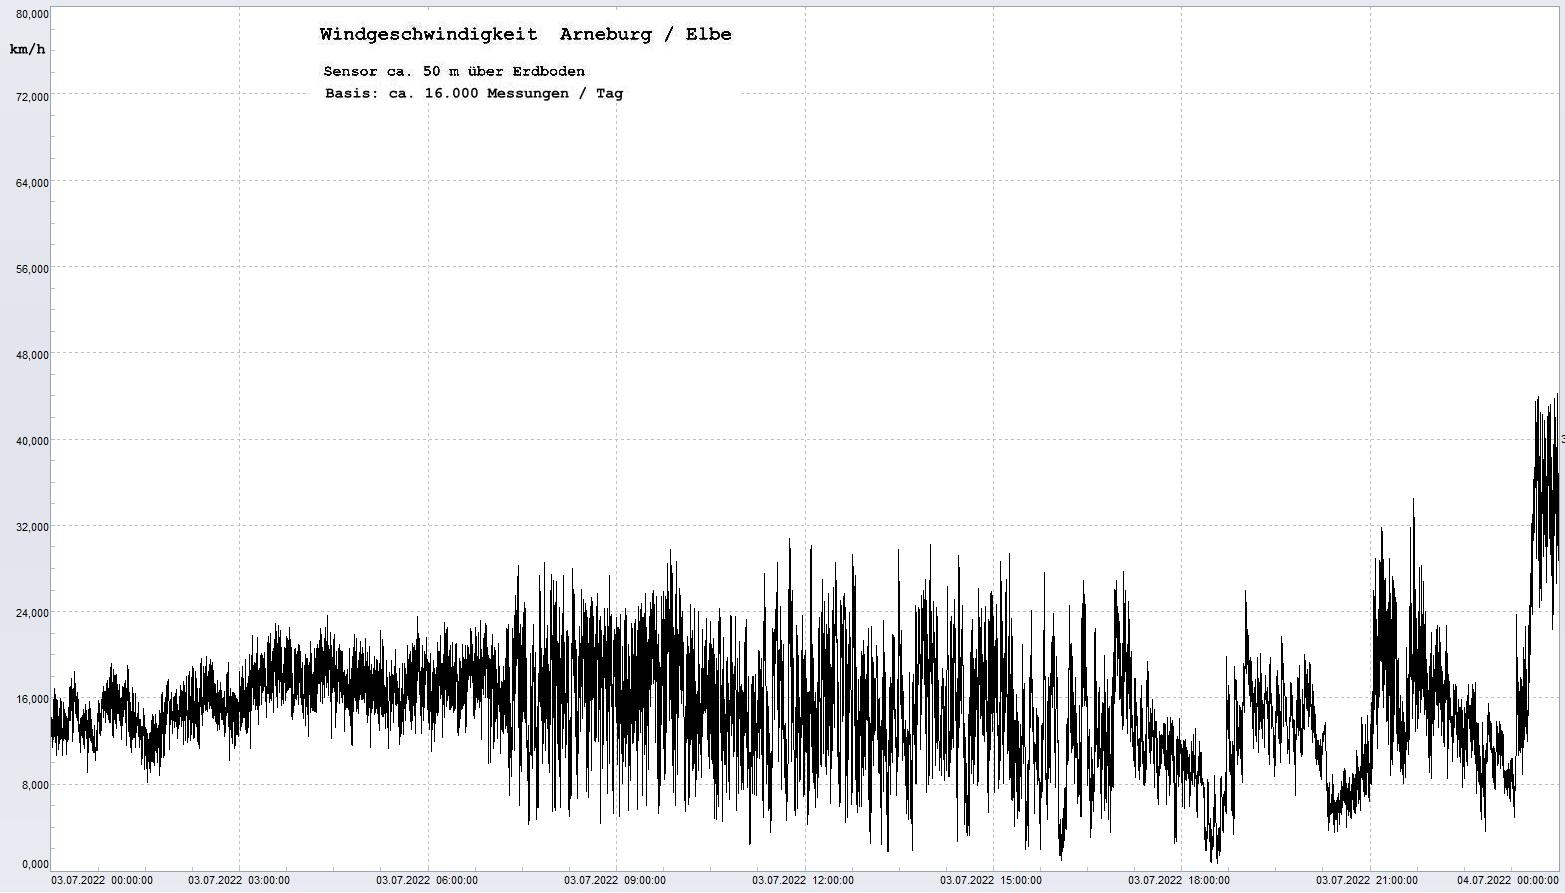 Arneburg Tages-Diagramm Winddaten, 03.07.2022
  Diagramm, Sensor auf Gebude, ca. 50 m ber Erdboden, Basis: 5s-Aufzeichnung